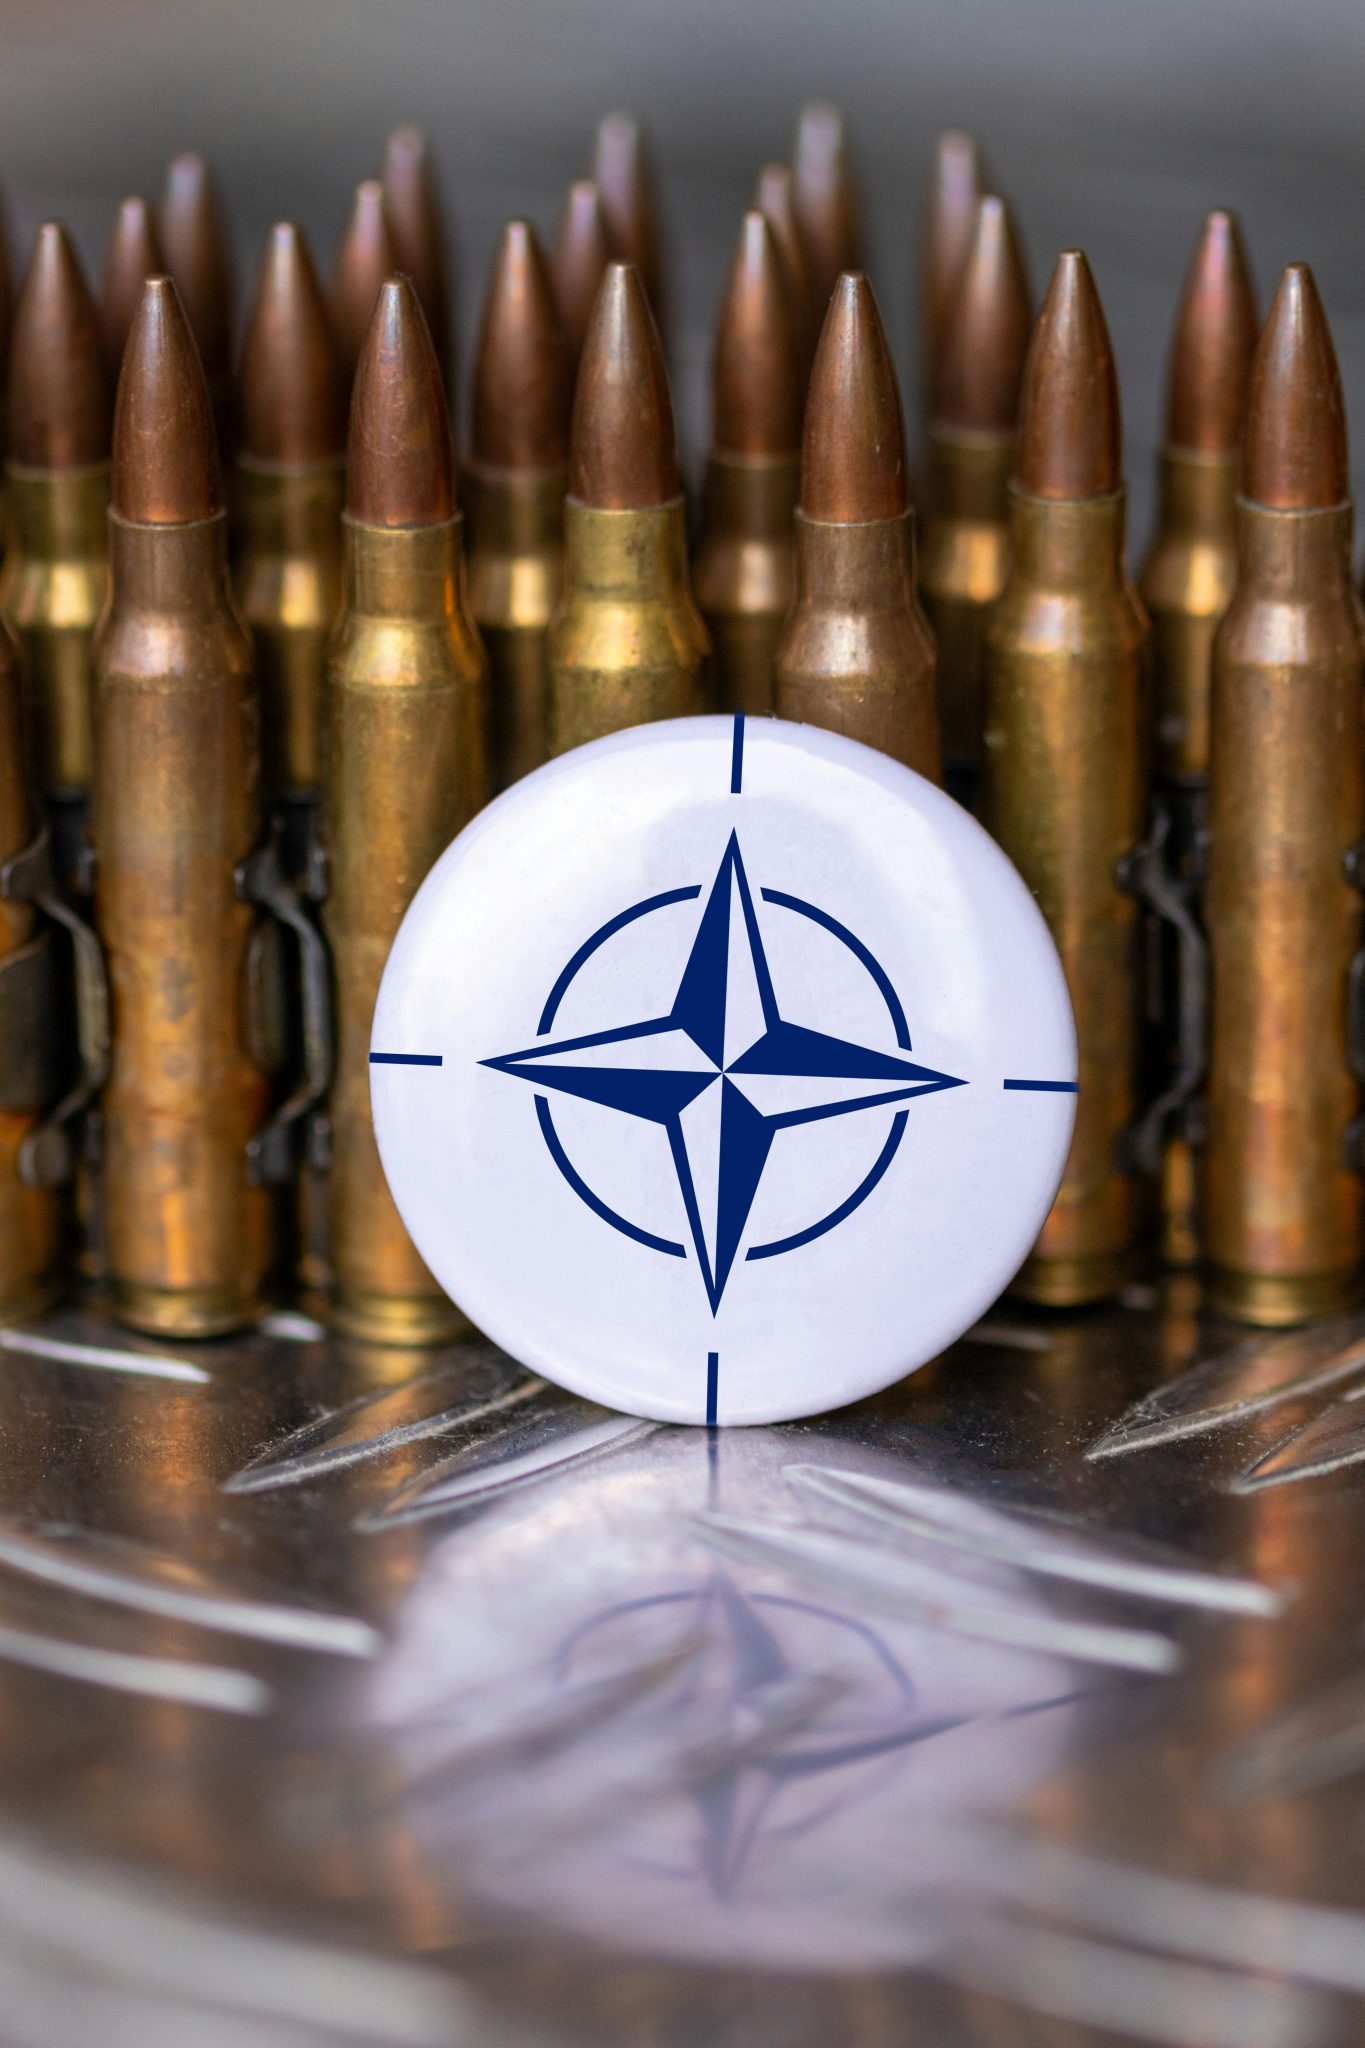 NATO New Force Model evolving